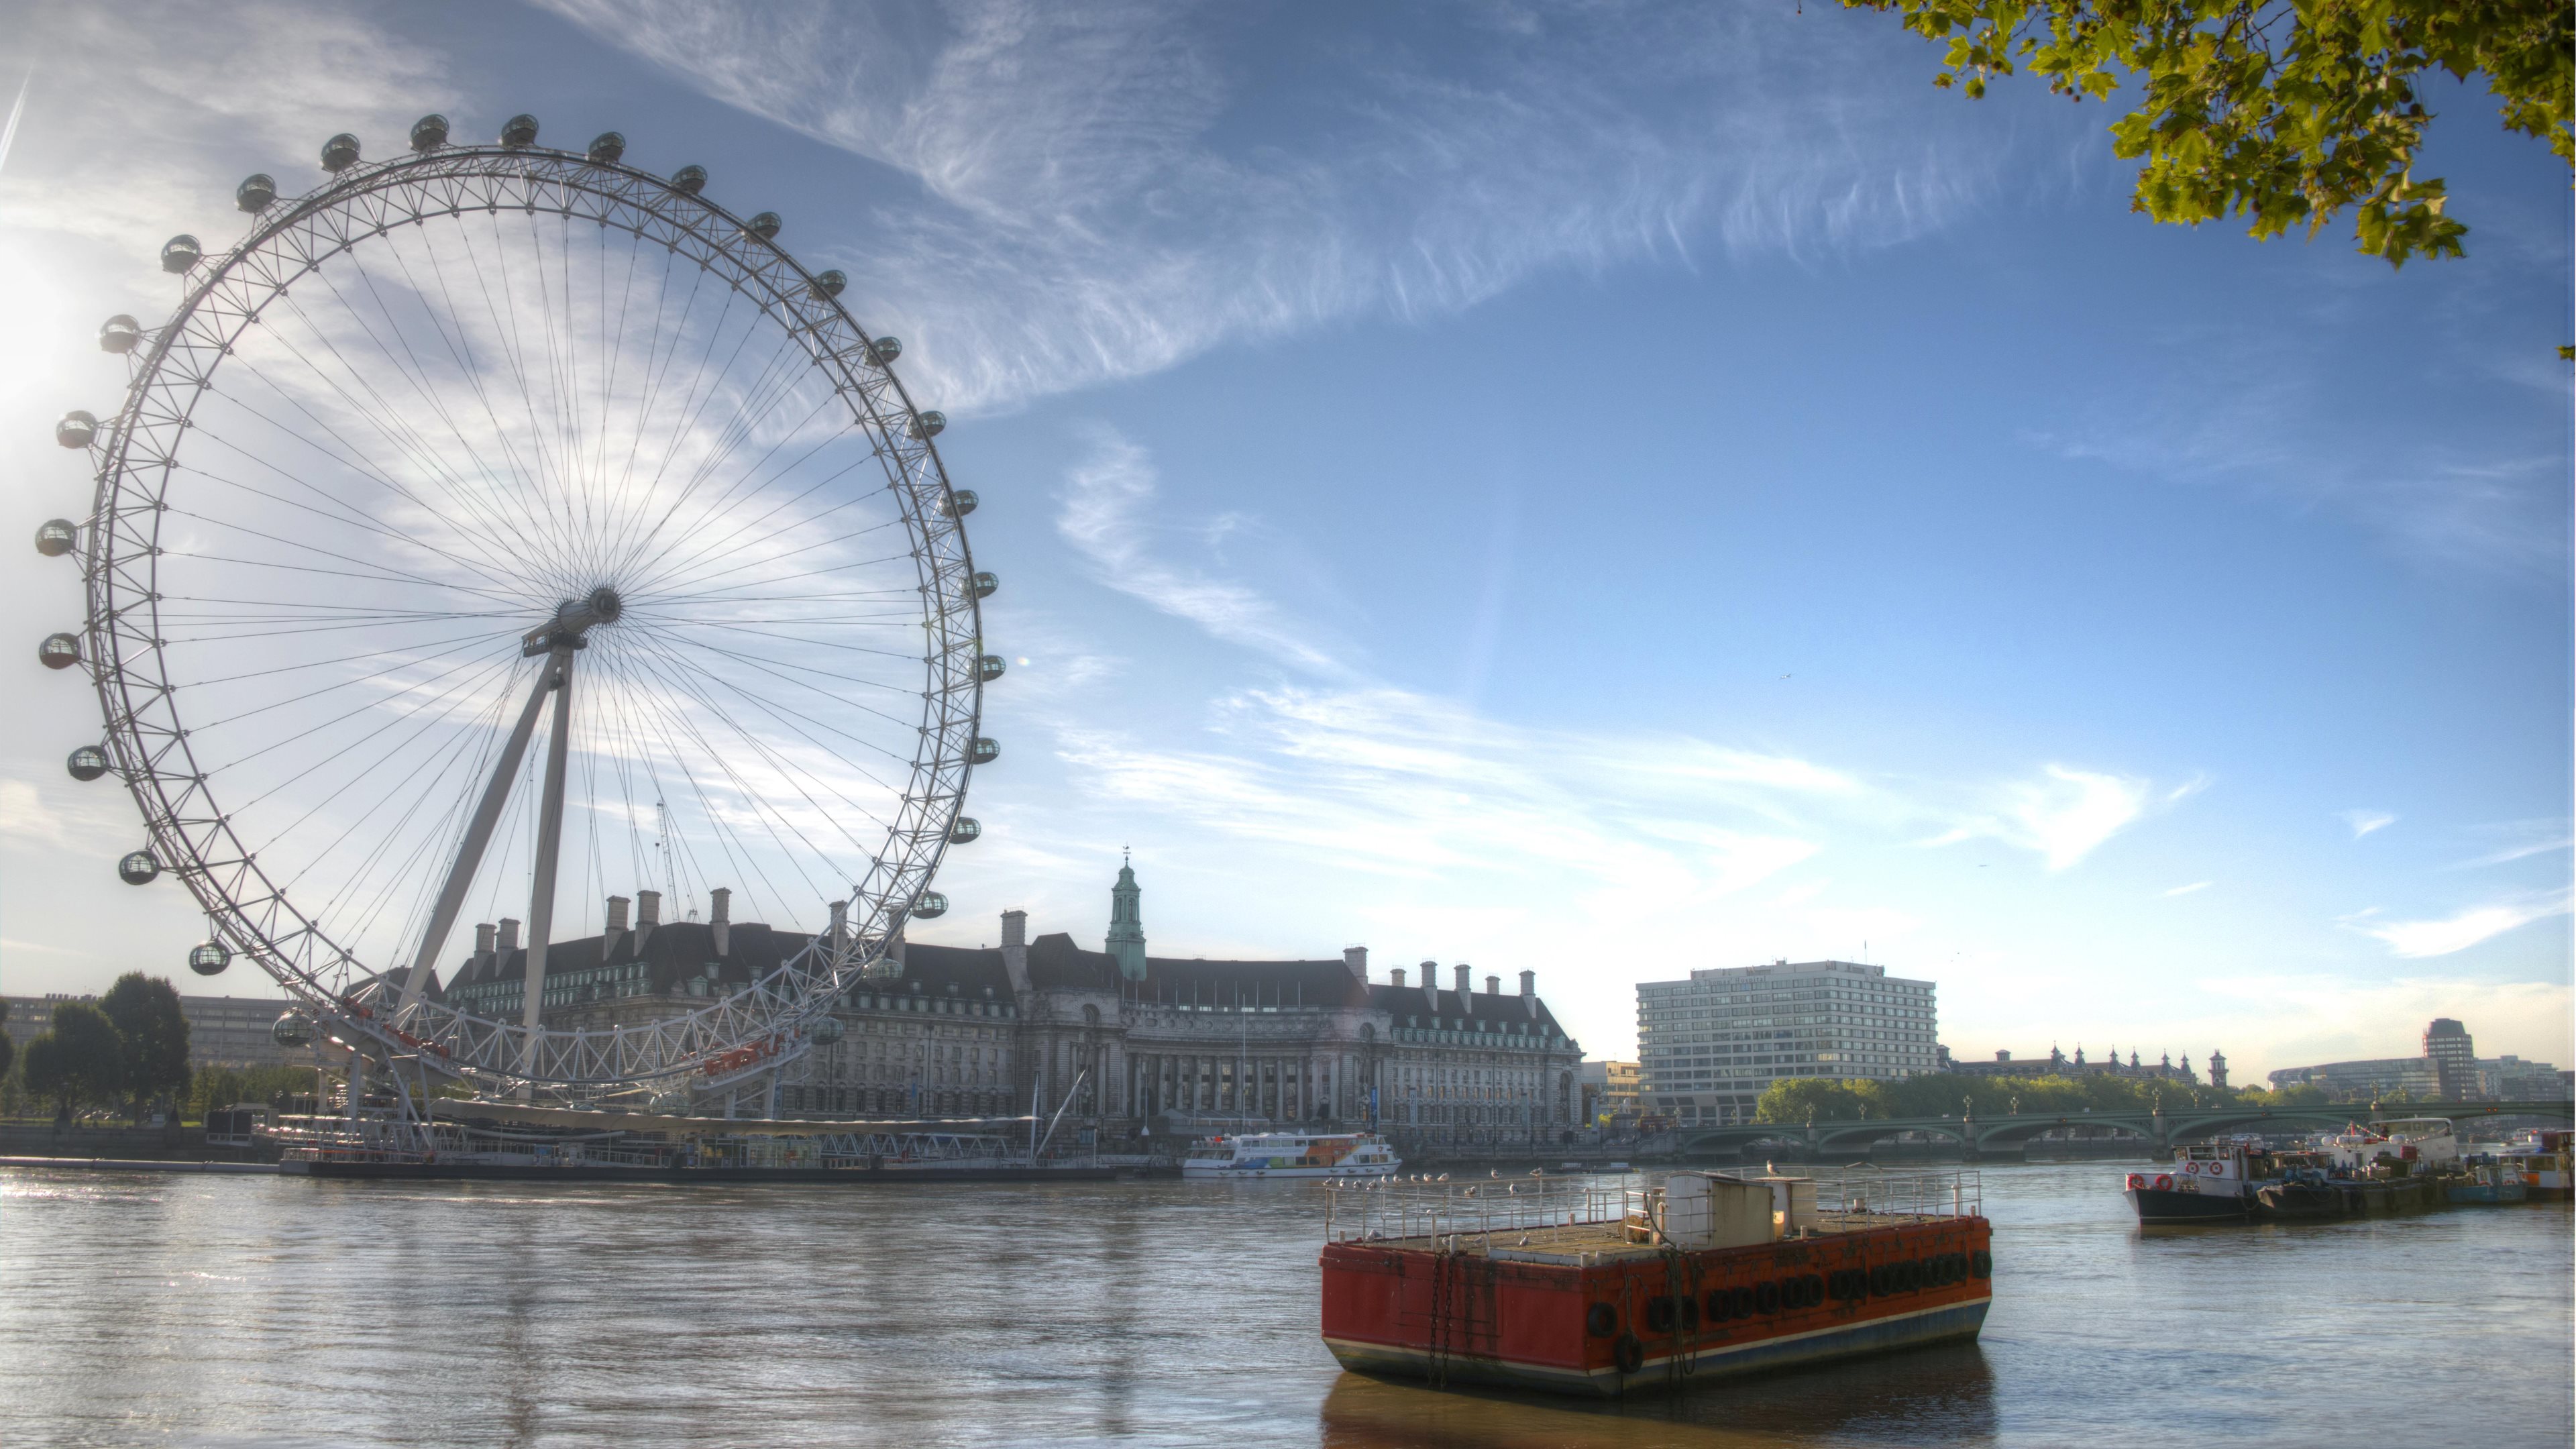 London Eye 4k Ultra HD Wallpaper